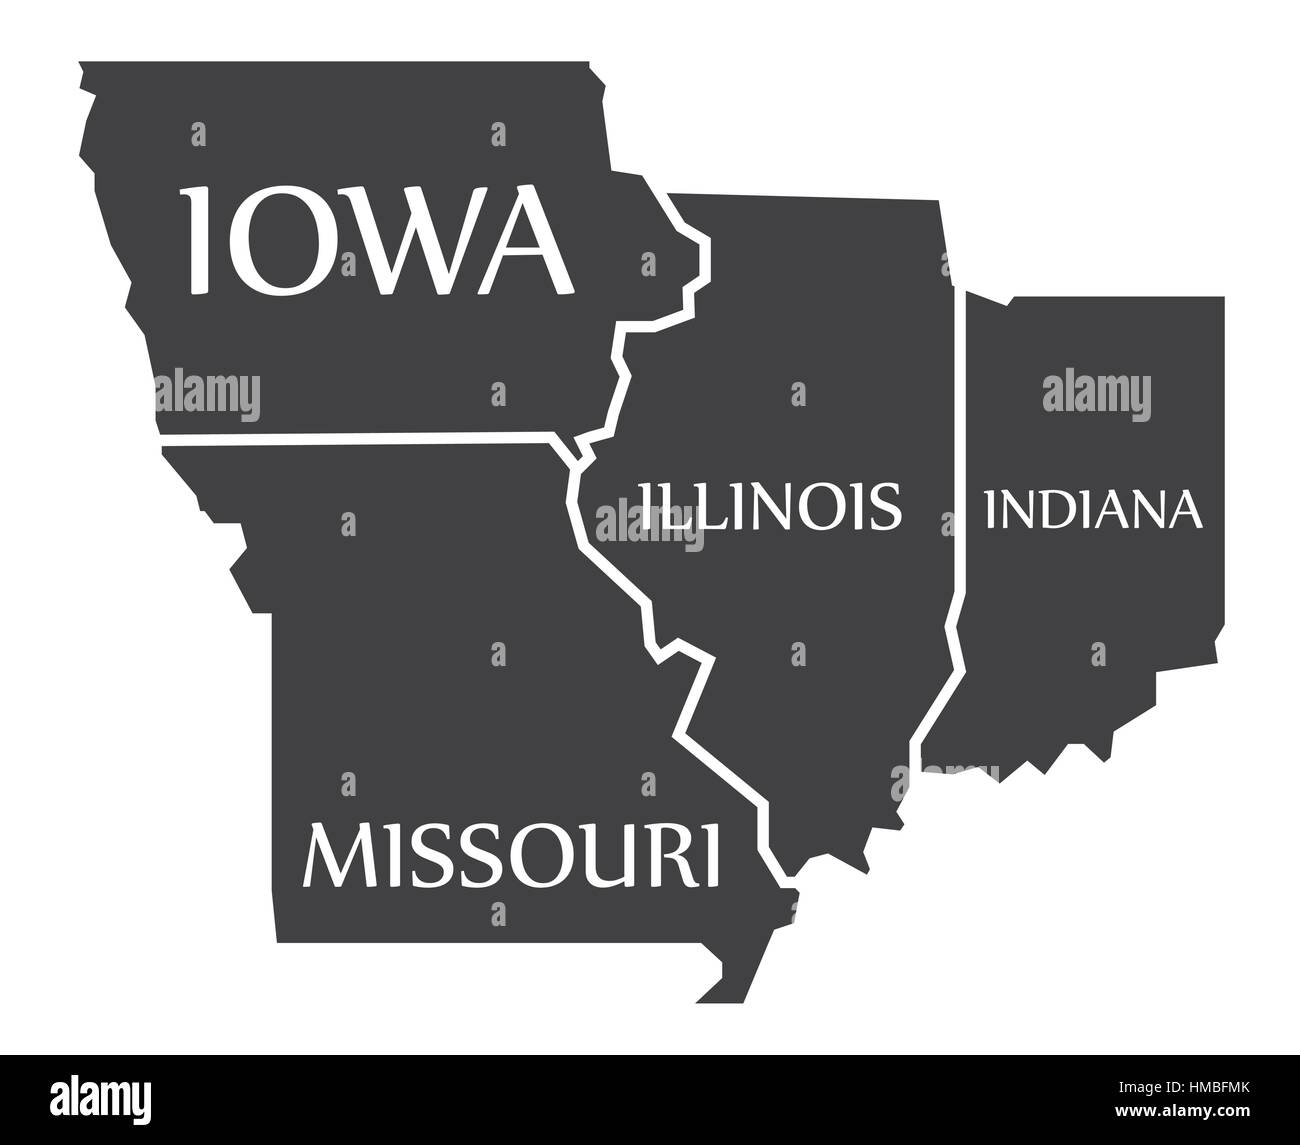 Iowa Missouri Illinois Indiana Map Labelled Black Illustration HMBFMK 